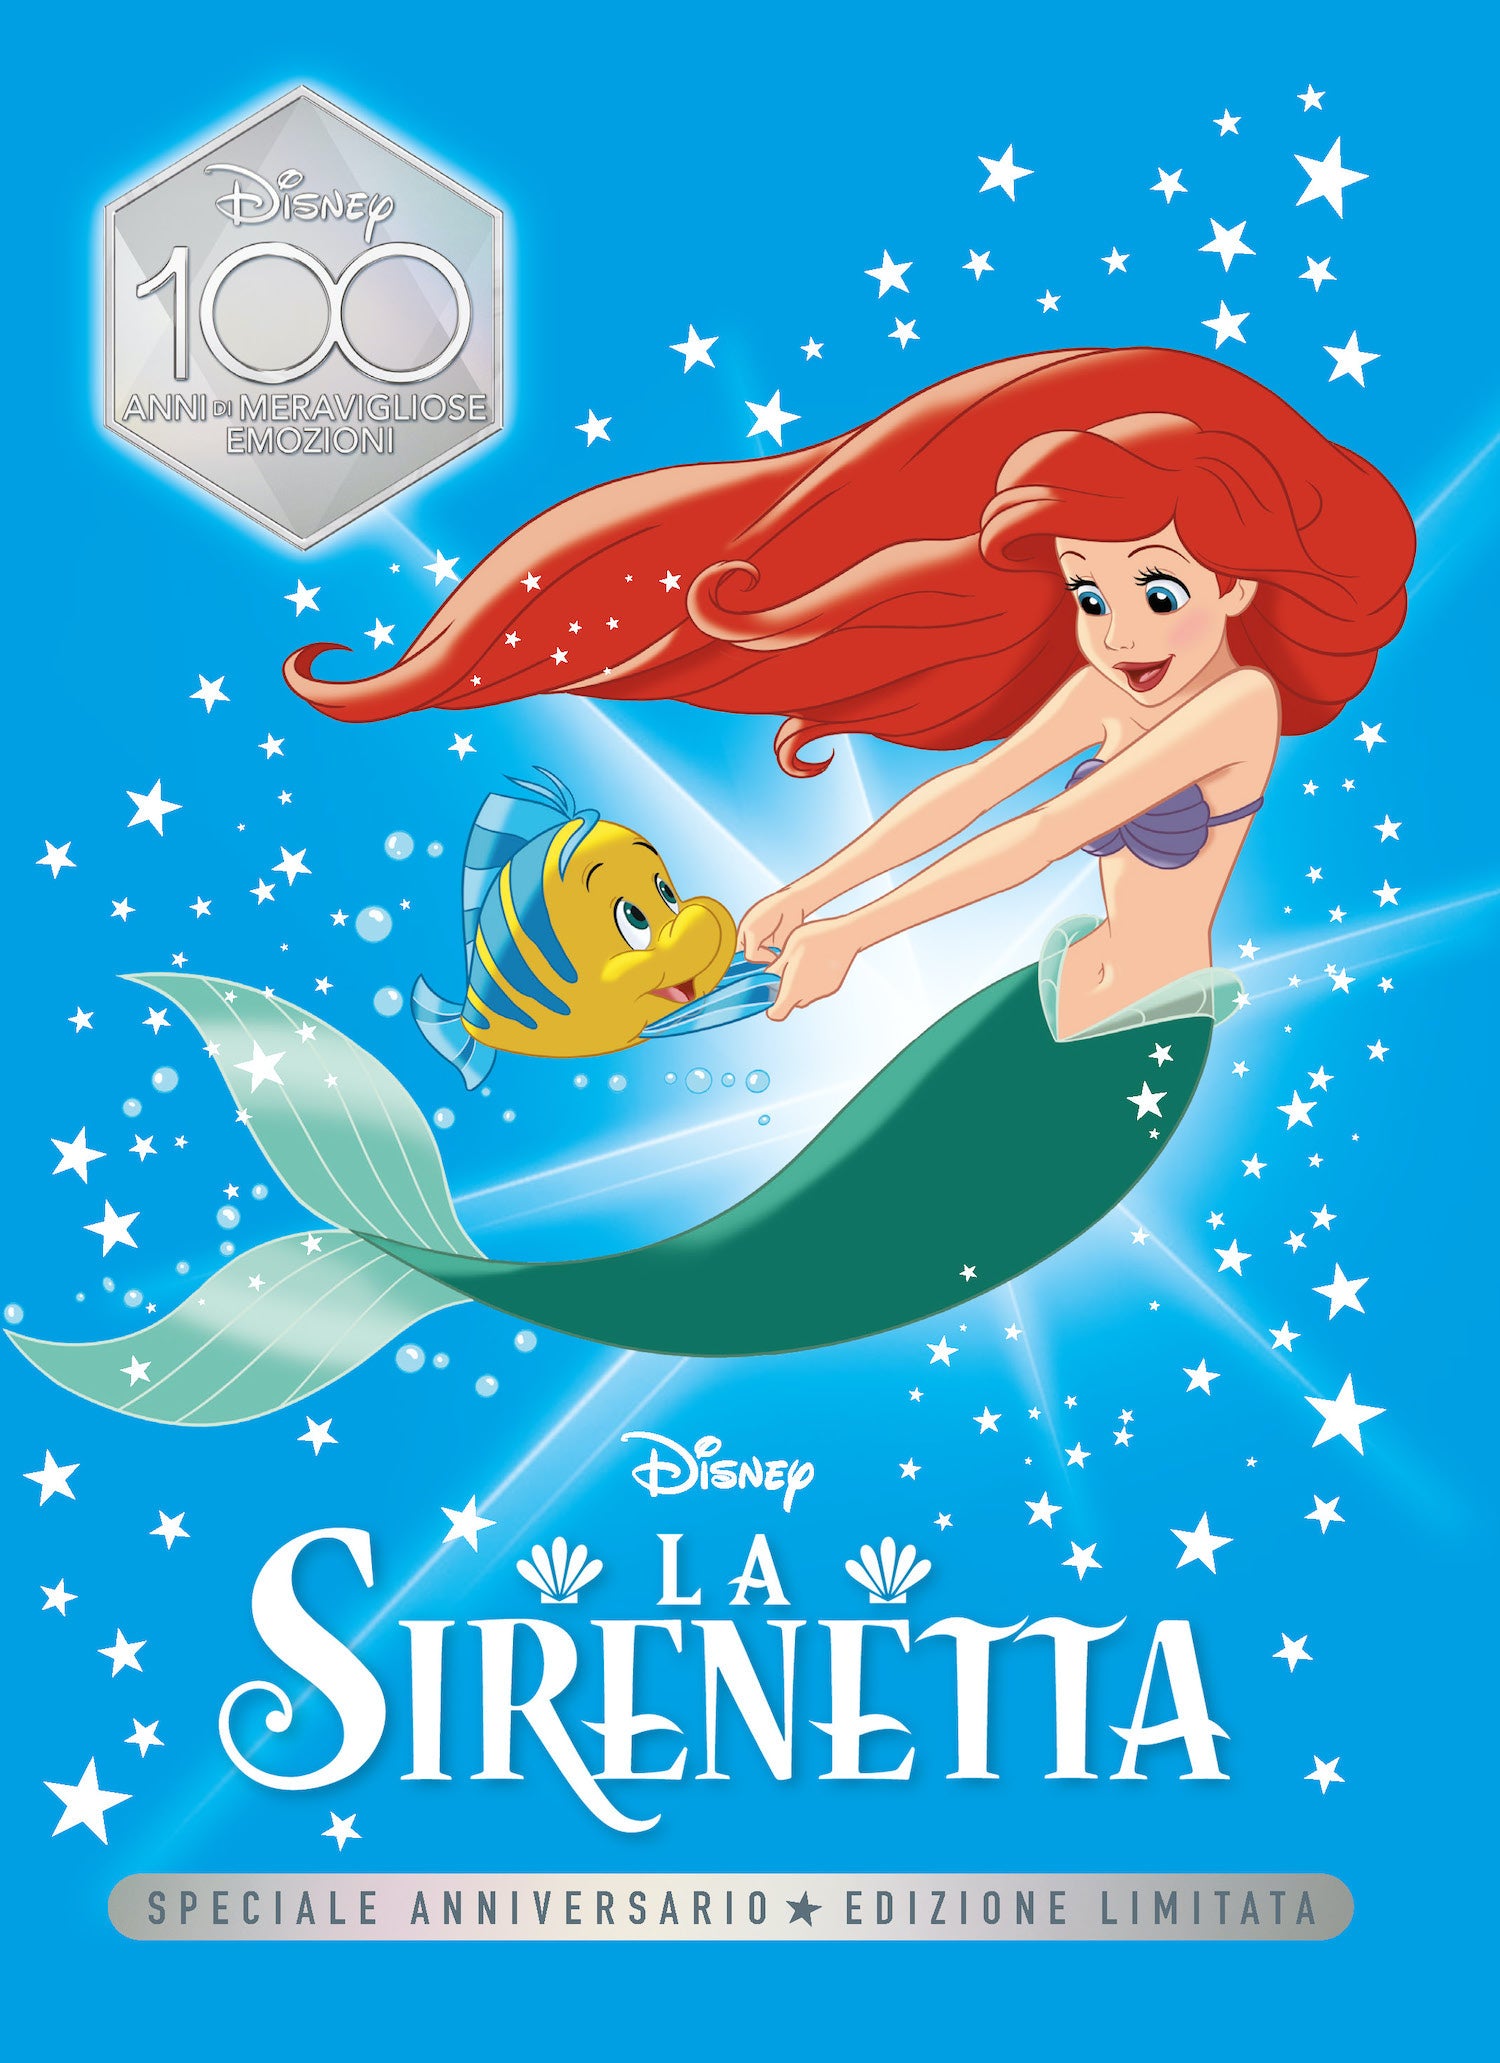 La Sirenetta Speciale Anniversario Edizione limitata. Disney 100 Anni di meravigliose emozioni